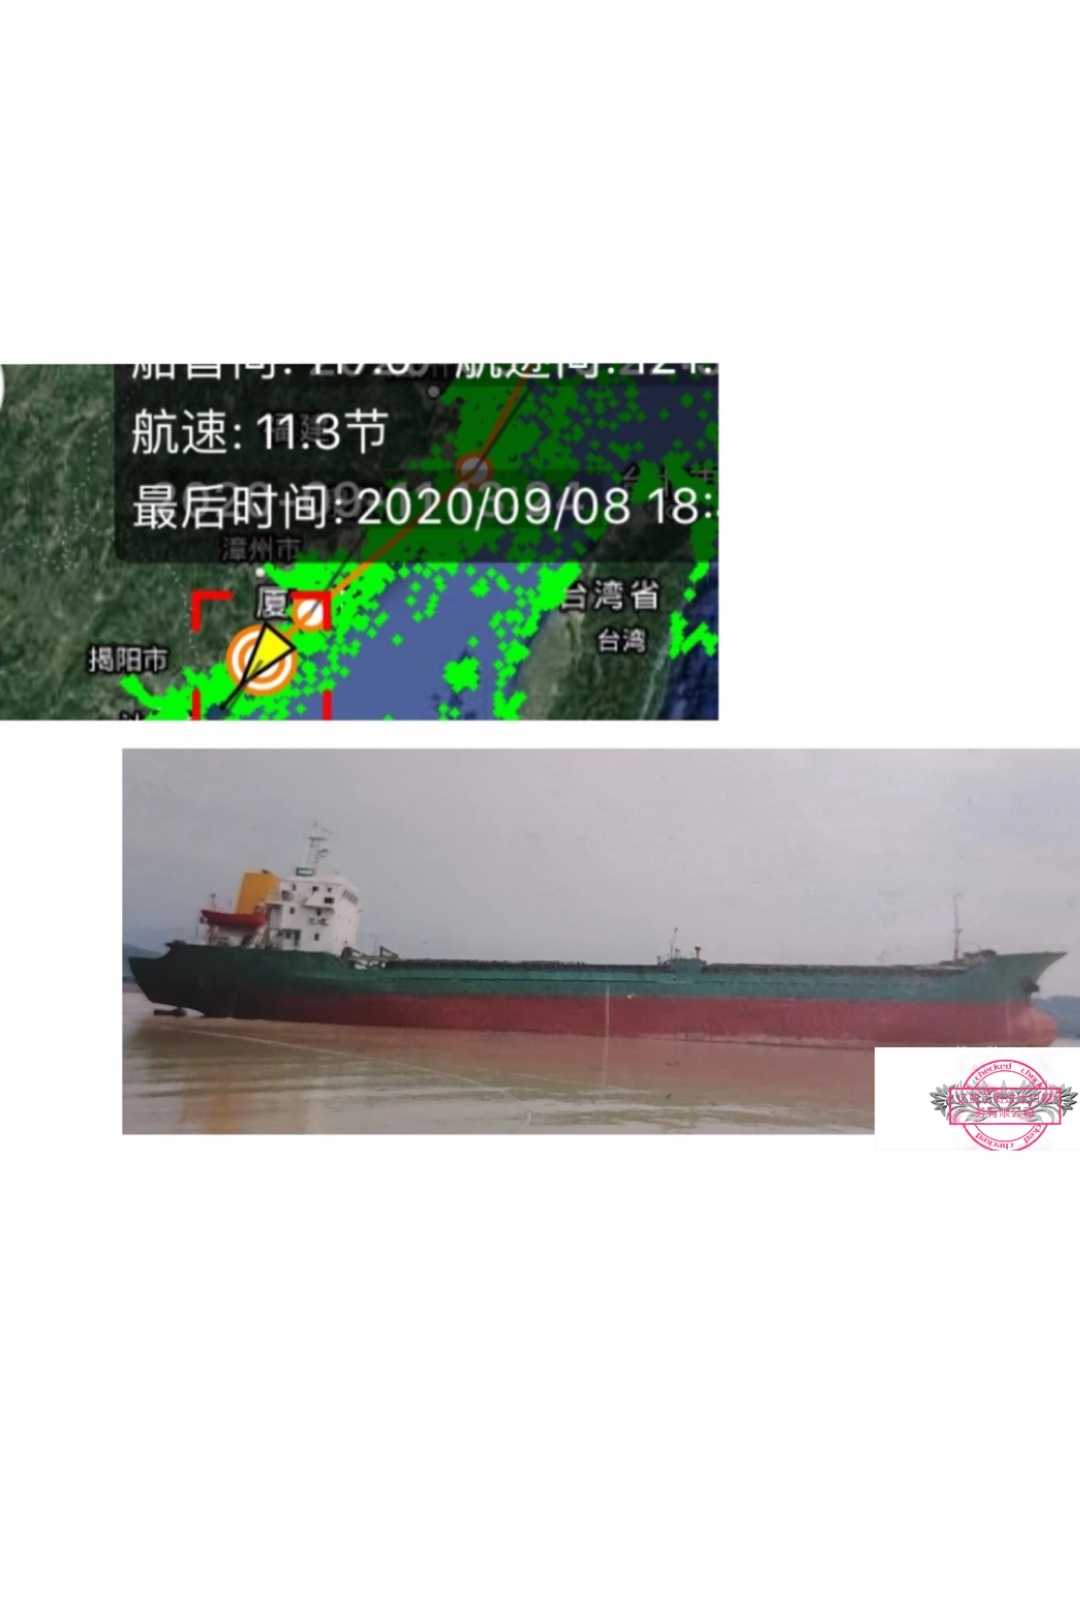 船东委托出售2001年浙江造干货船